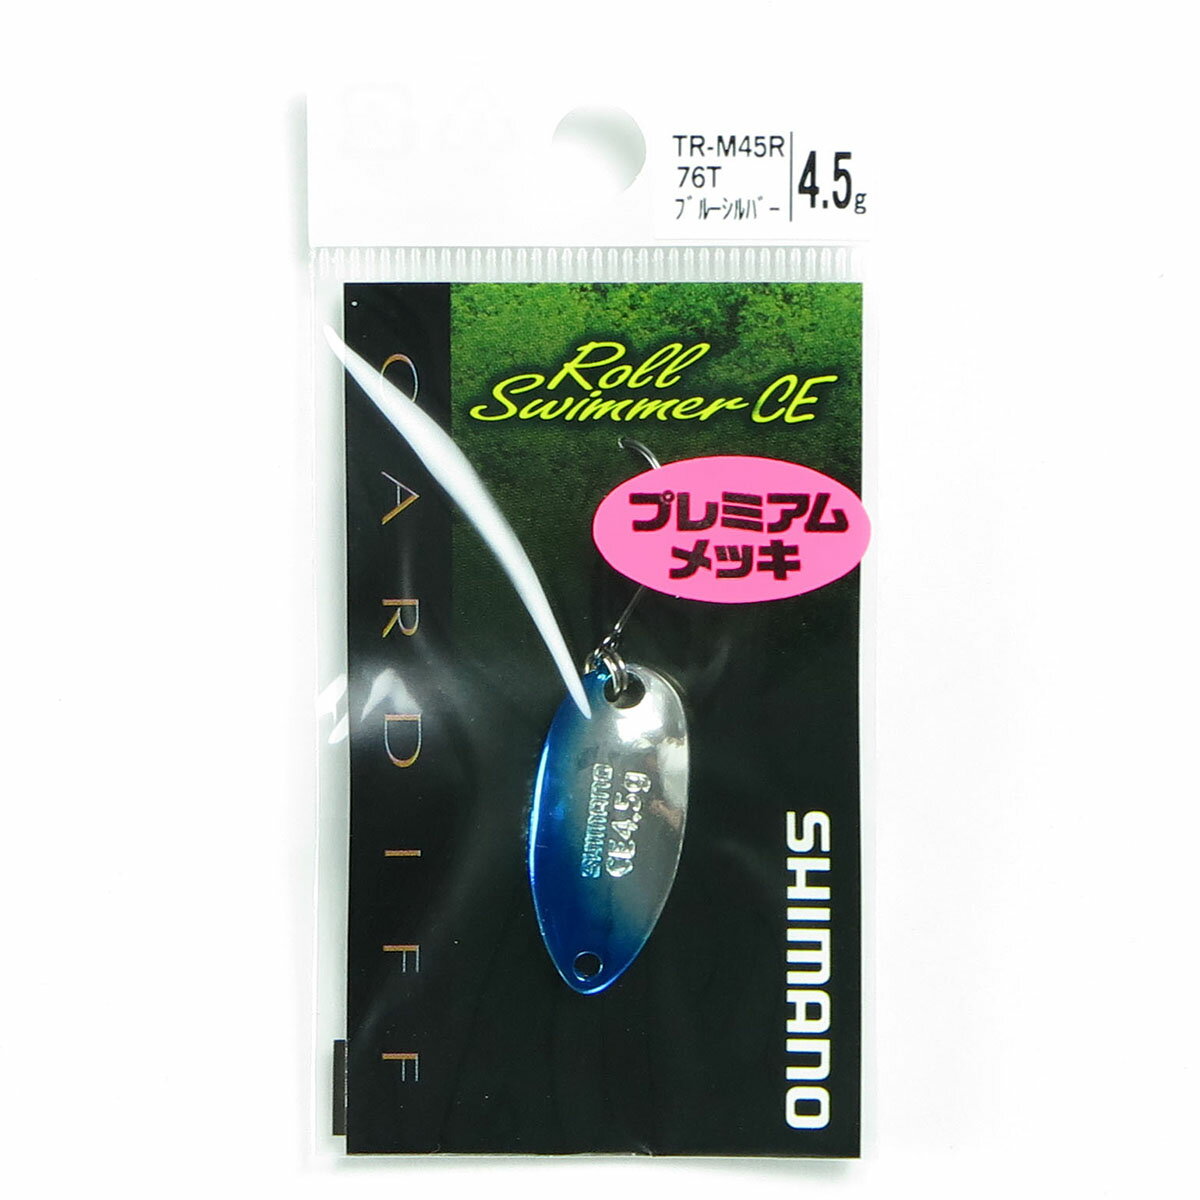 「 シマノ SHIMANO スプーン カーディフ ロールスイマー CE カモエディション 4.5g TR-M45R ブルーシルバー 」  釣具 釣り具 釣り用品